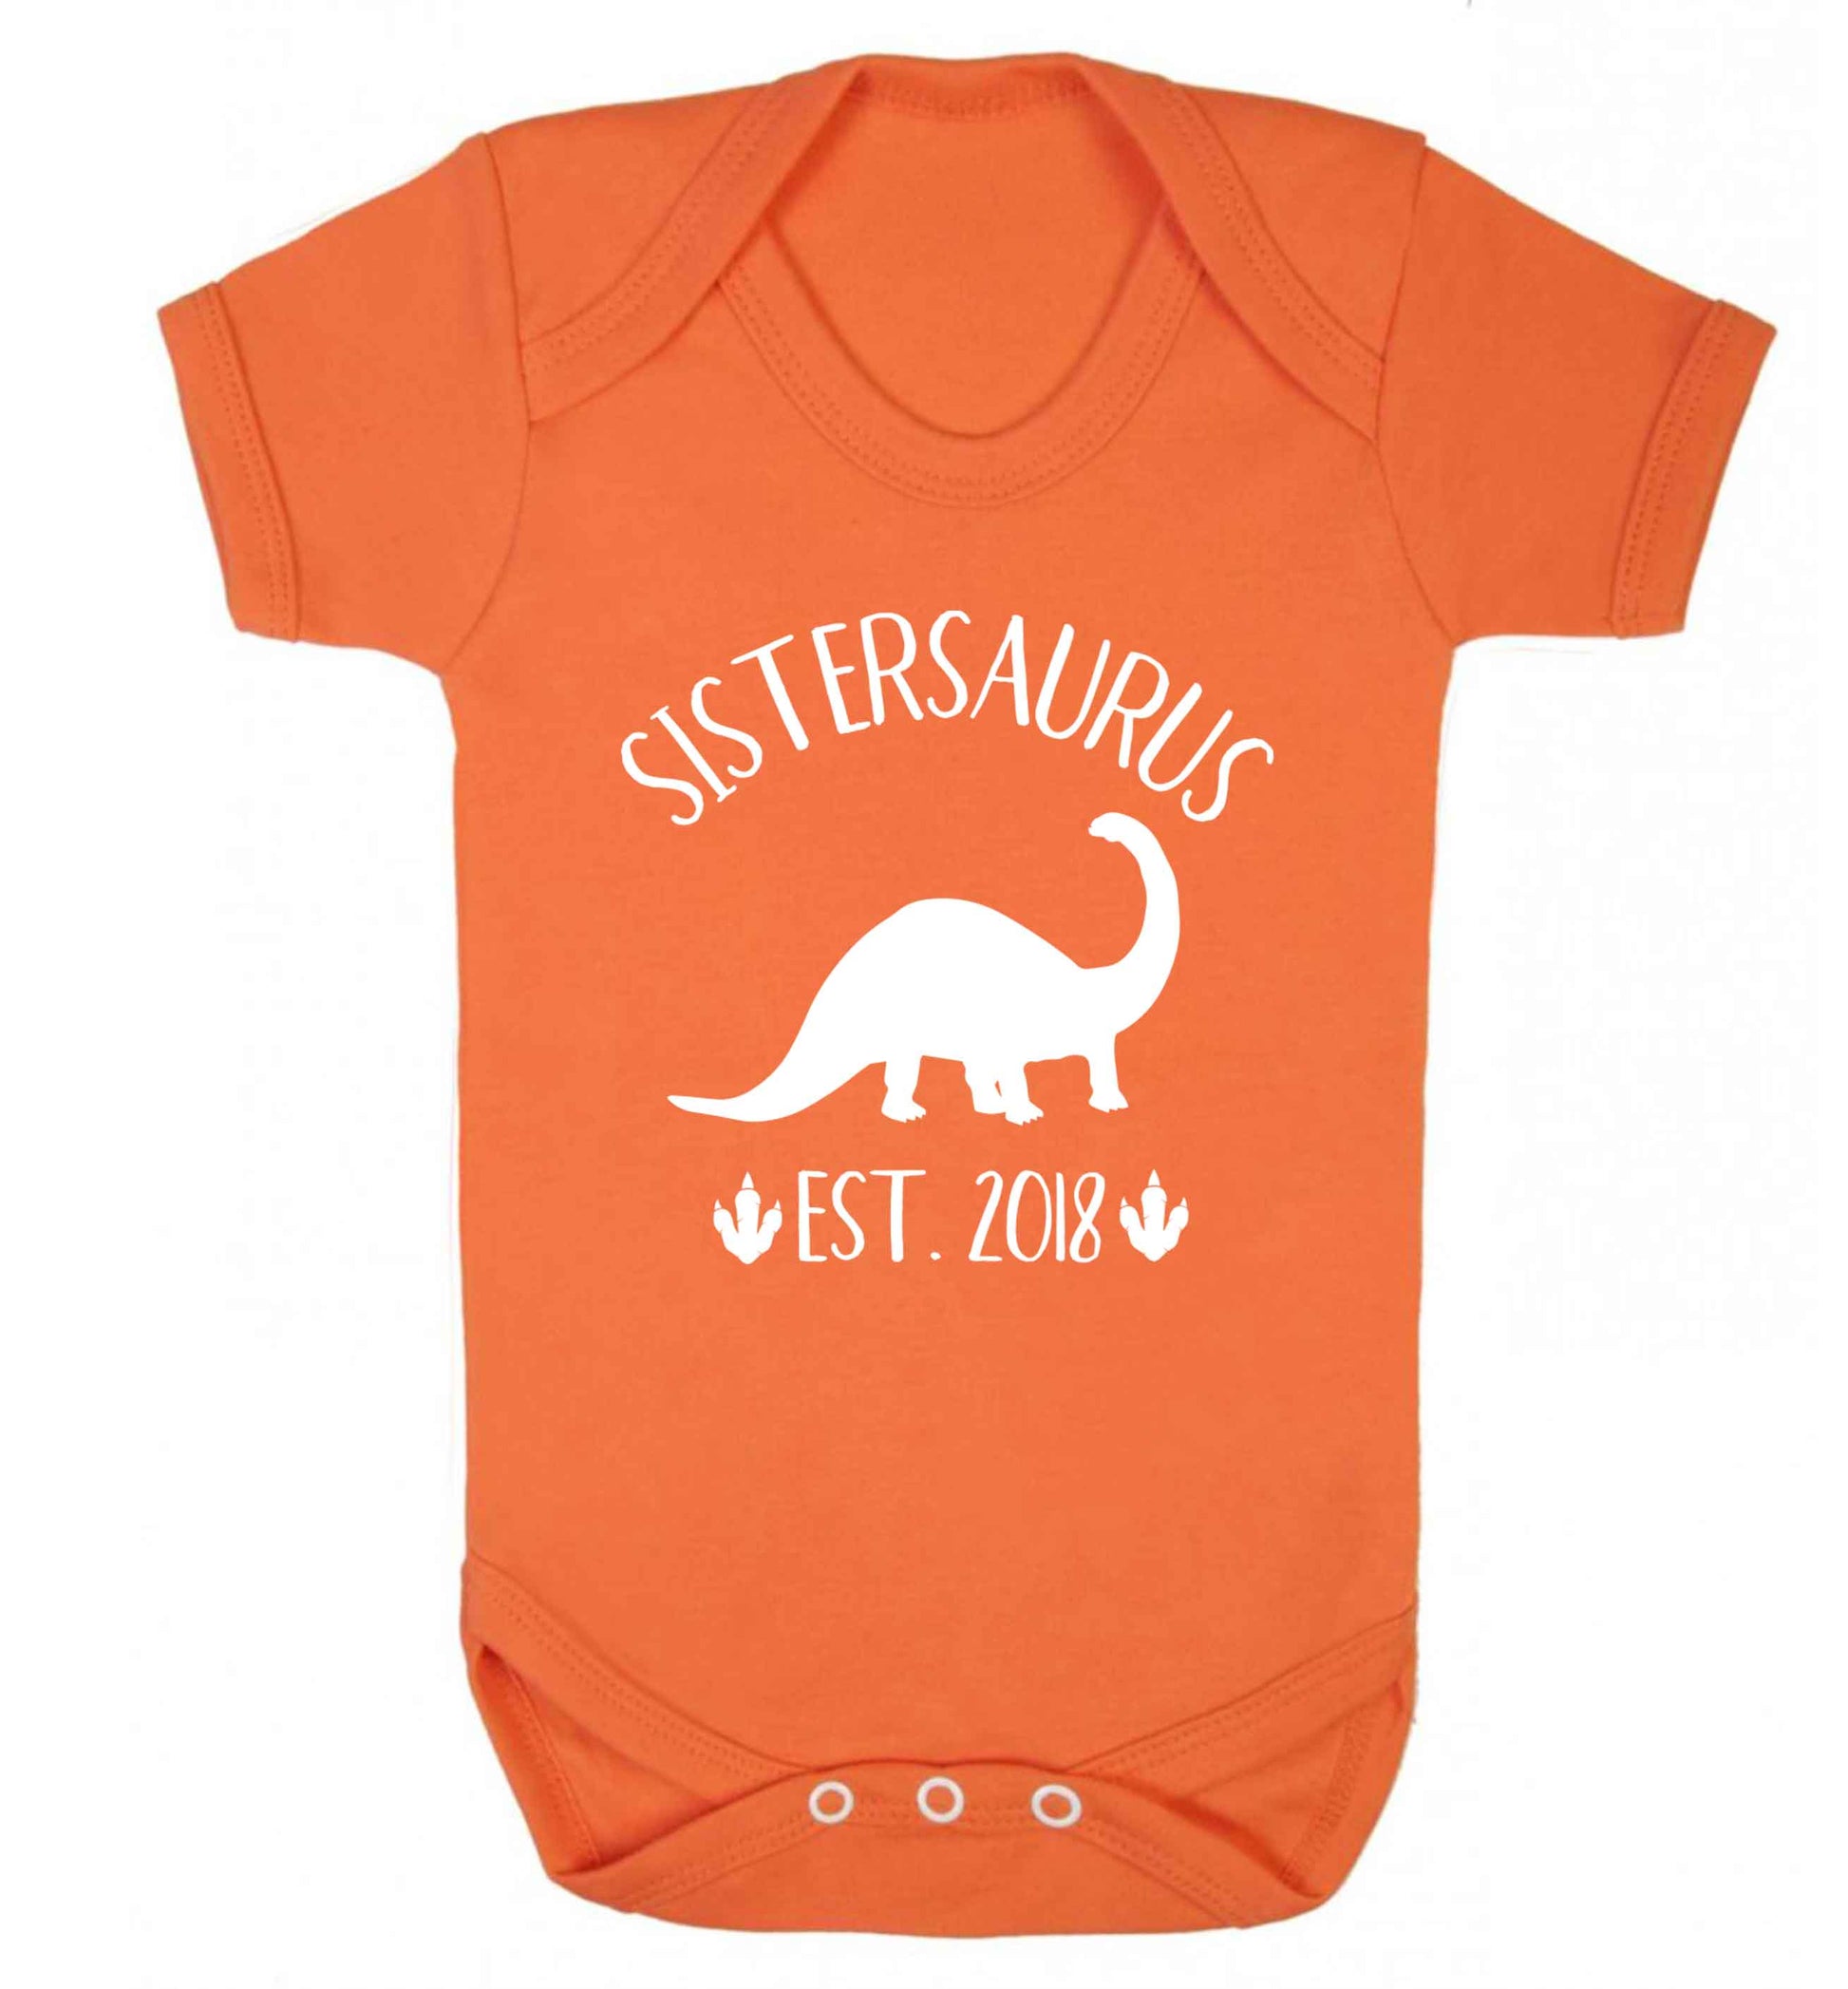 Personalised sistersaurus since (custom date) Baby Vest orange 18-24 months